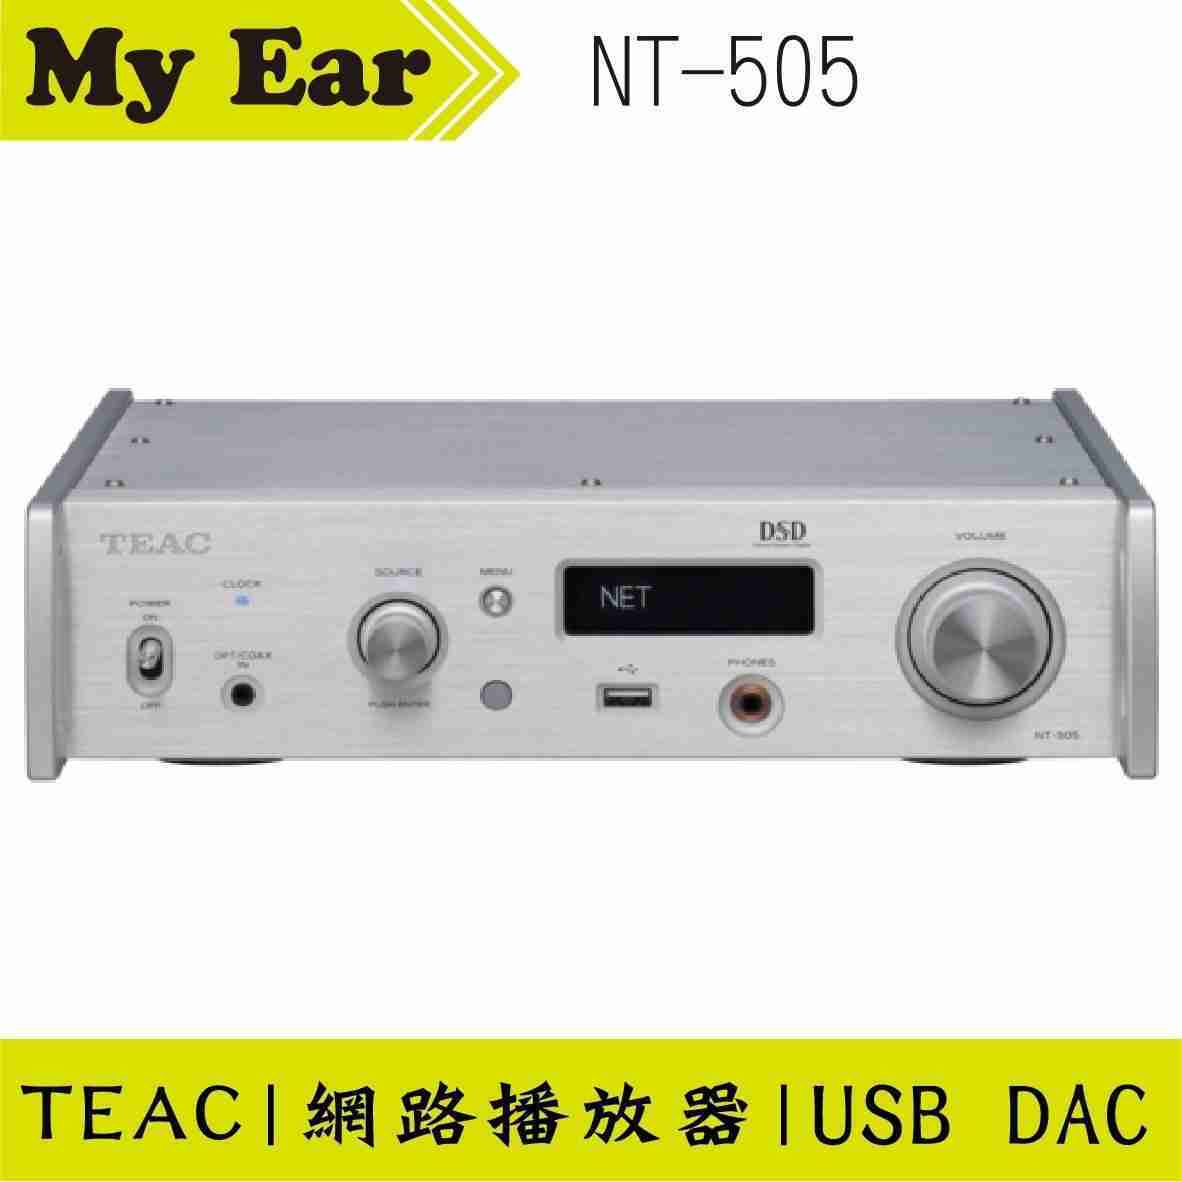 TEAC NT-505 USB DAC 網路串流播放器 雙色可選 | My Ear 耳機專門店